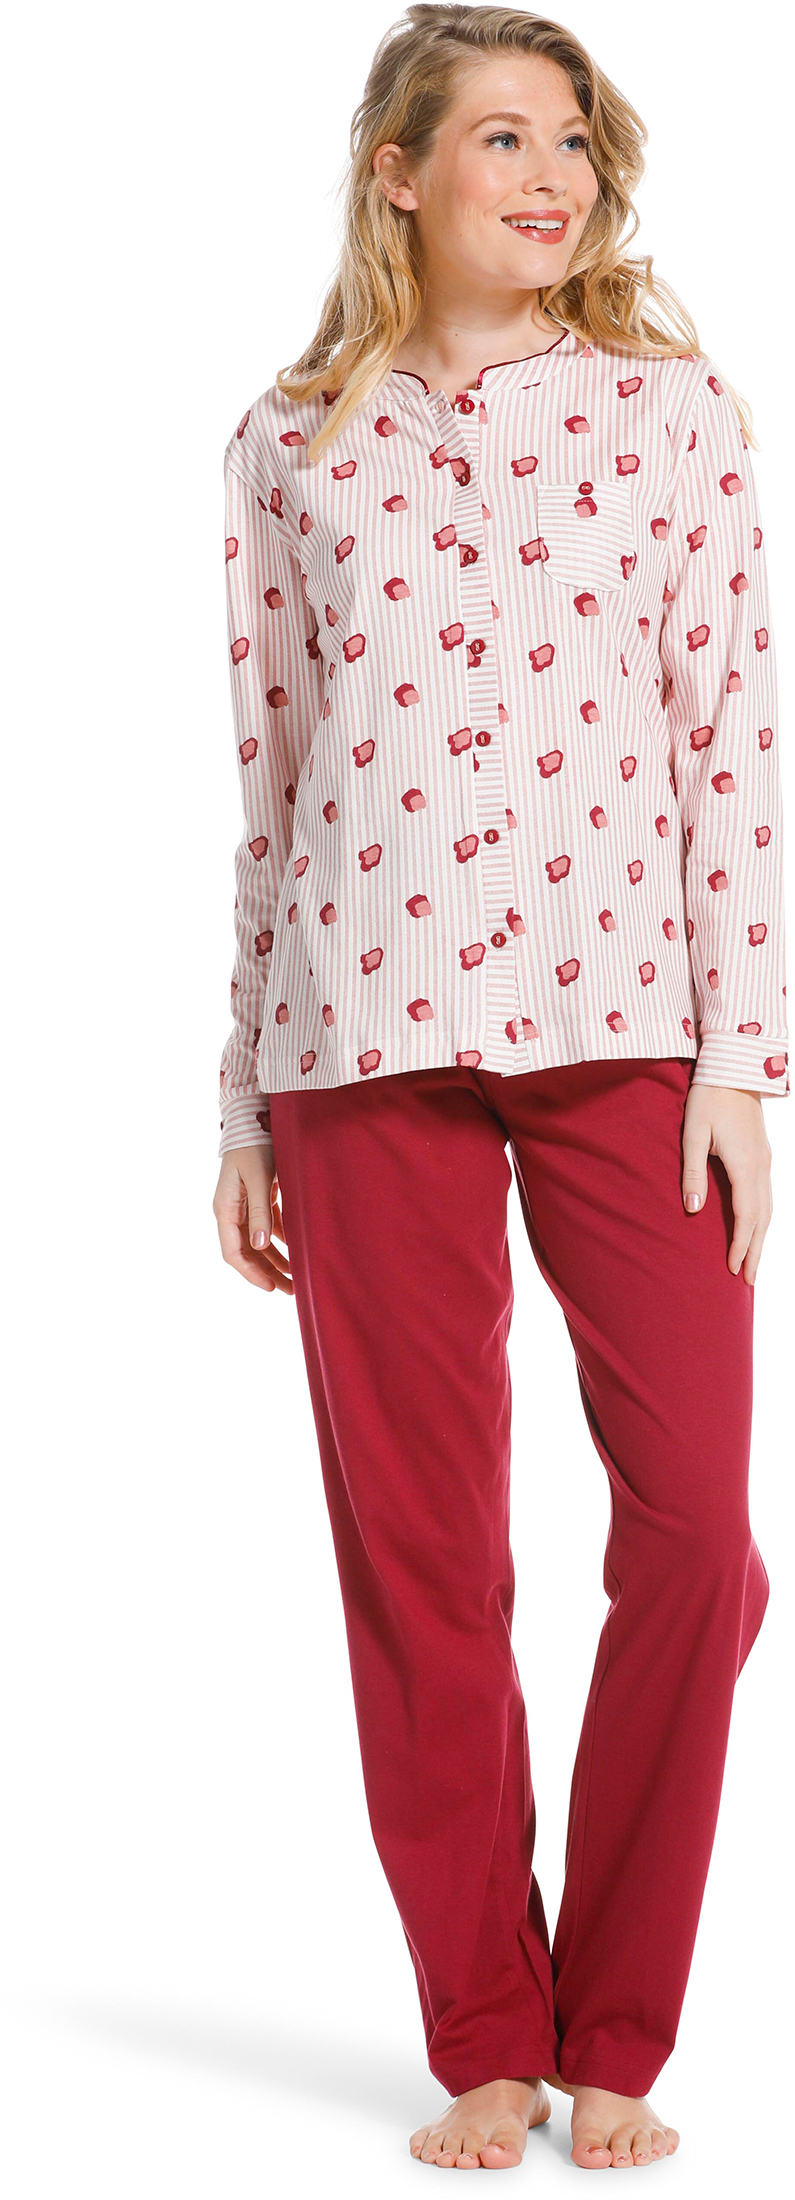 Pastunette doorknoop dames pyjama 20222-104-6 - Rose - 38